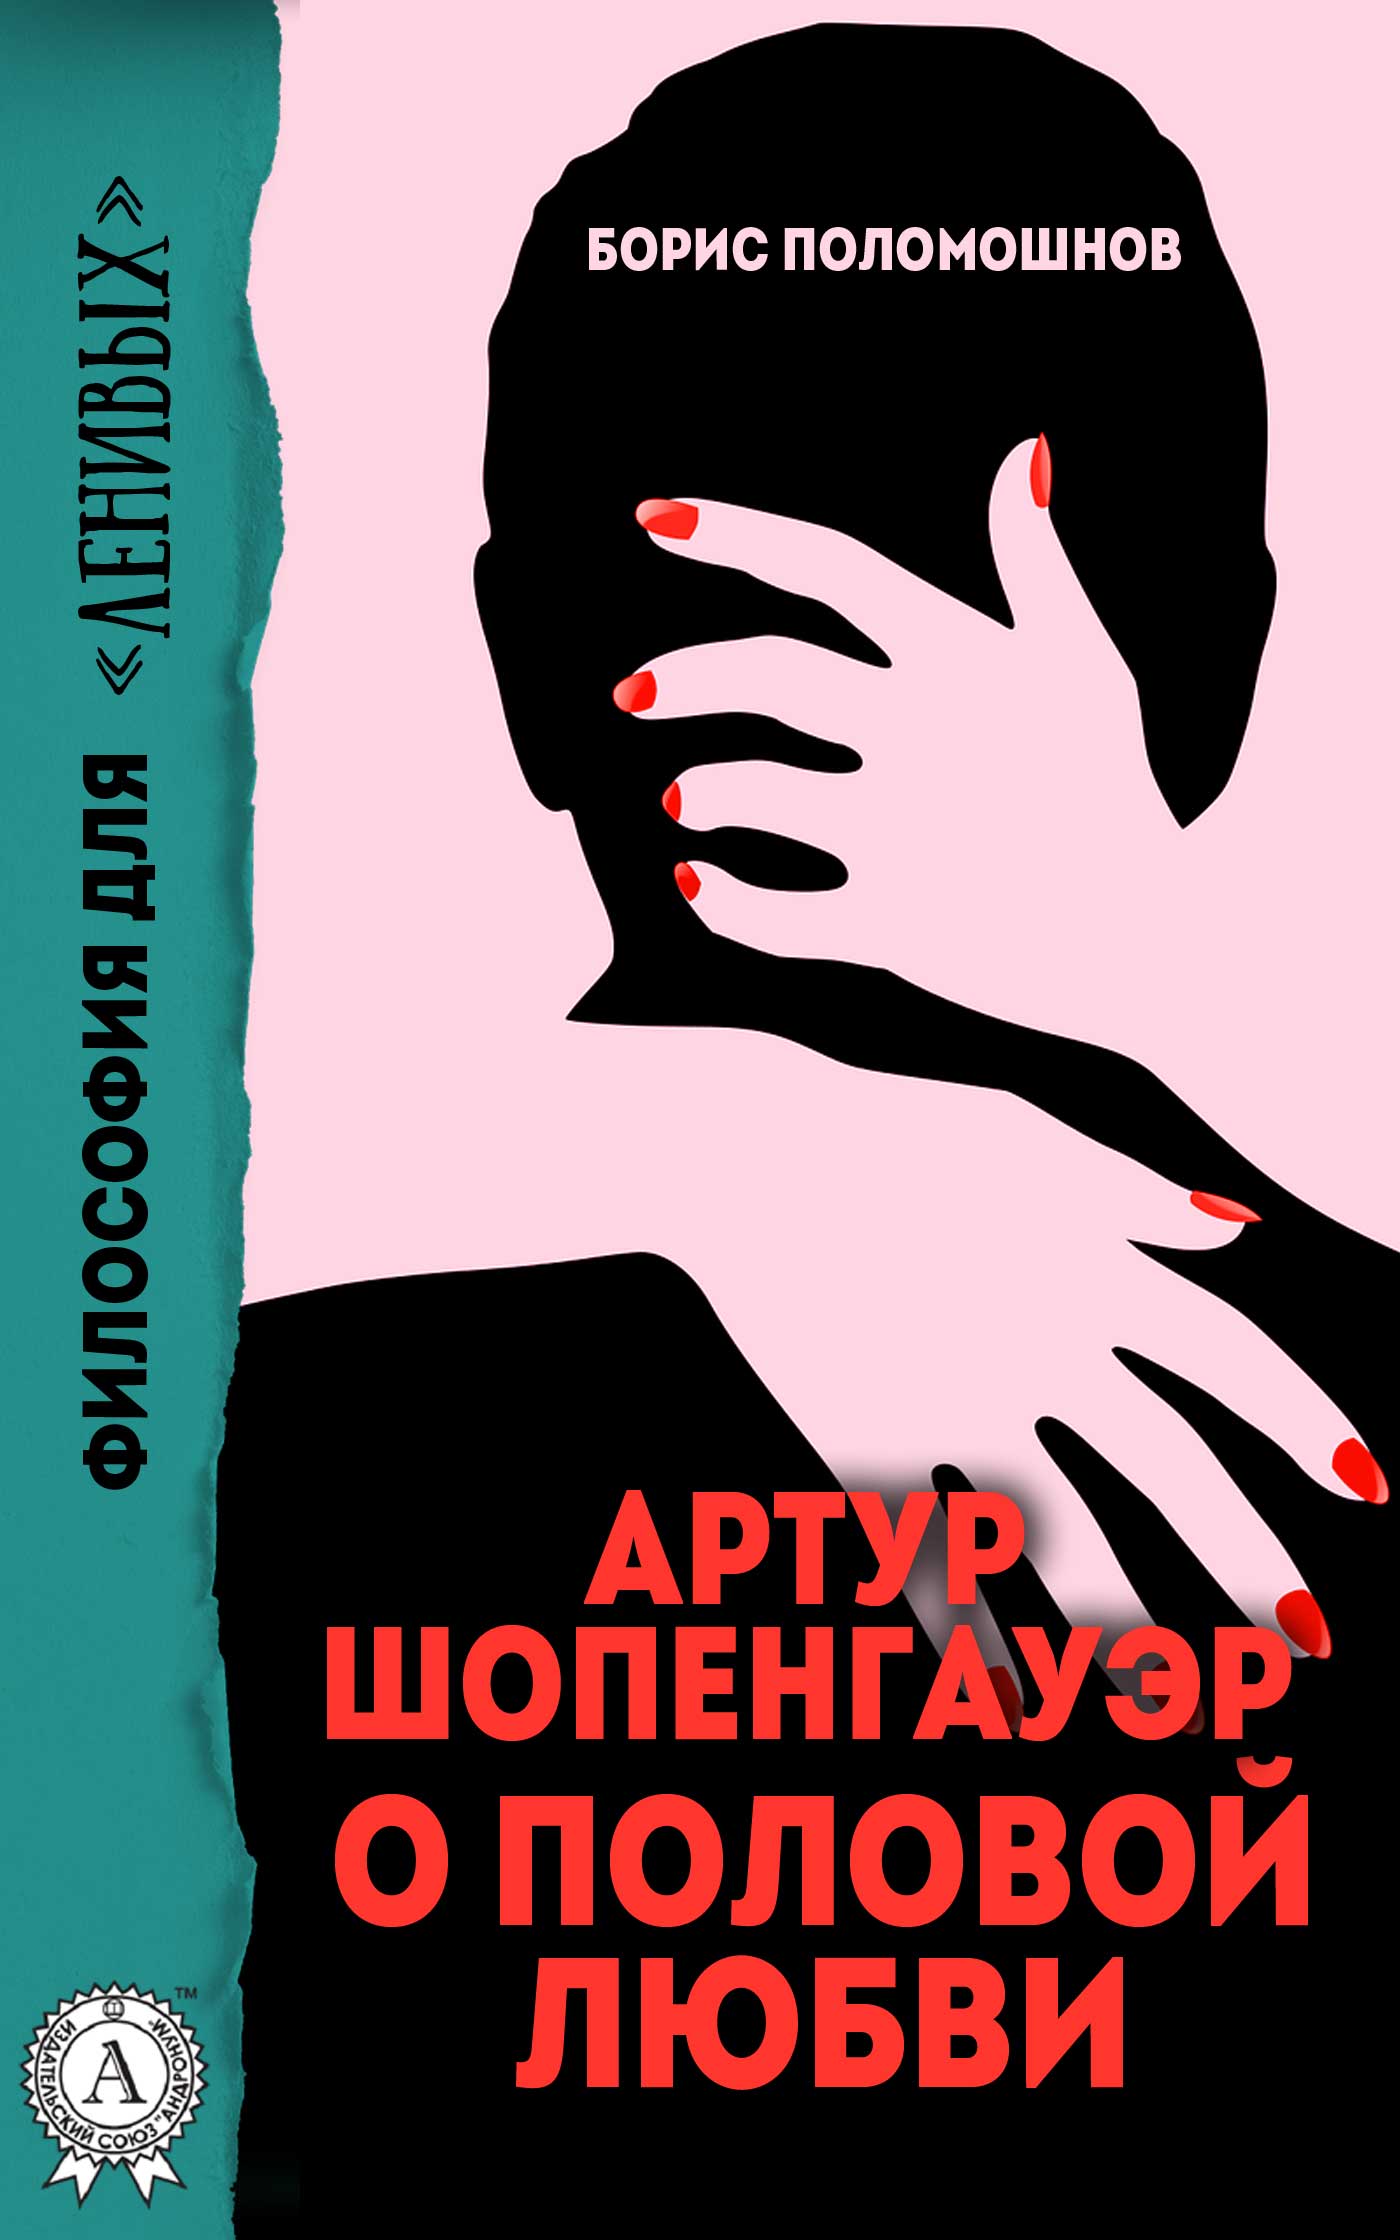 Книга Артур Шопенгауэр о половой любви из серии , созданная Борис Поломошнов, может относится к жанру Философия. Стоимость книги Артур Шопенгауэр о половой любви  с идентификатором 28719559 составляет 149.00 руб.